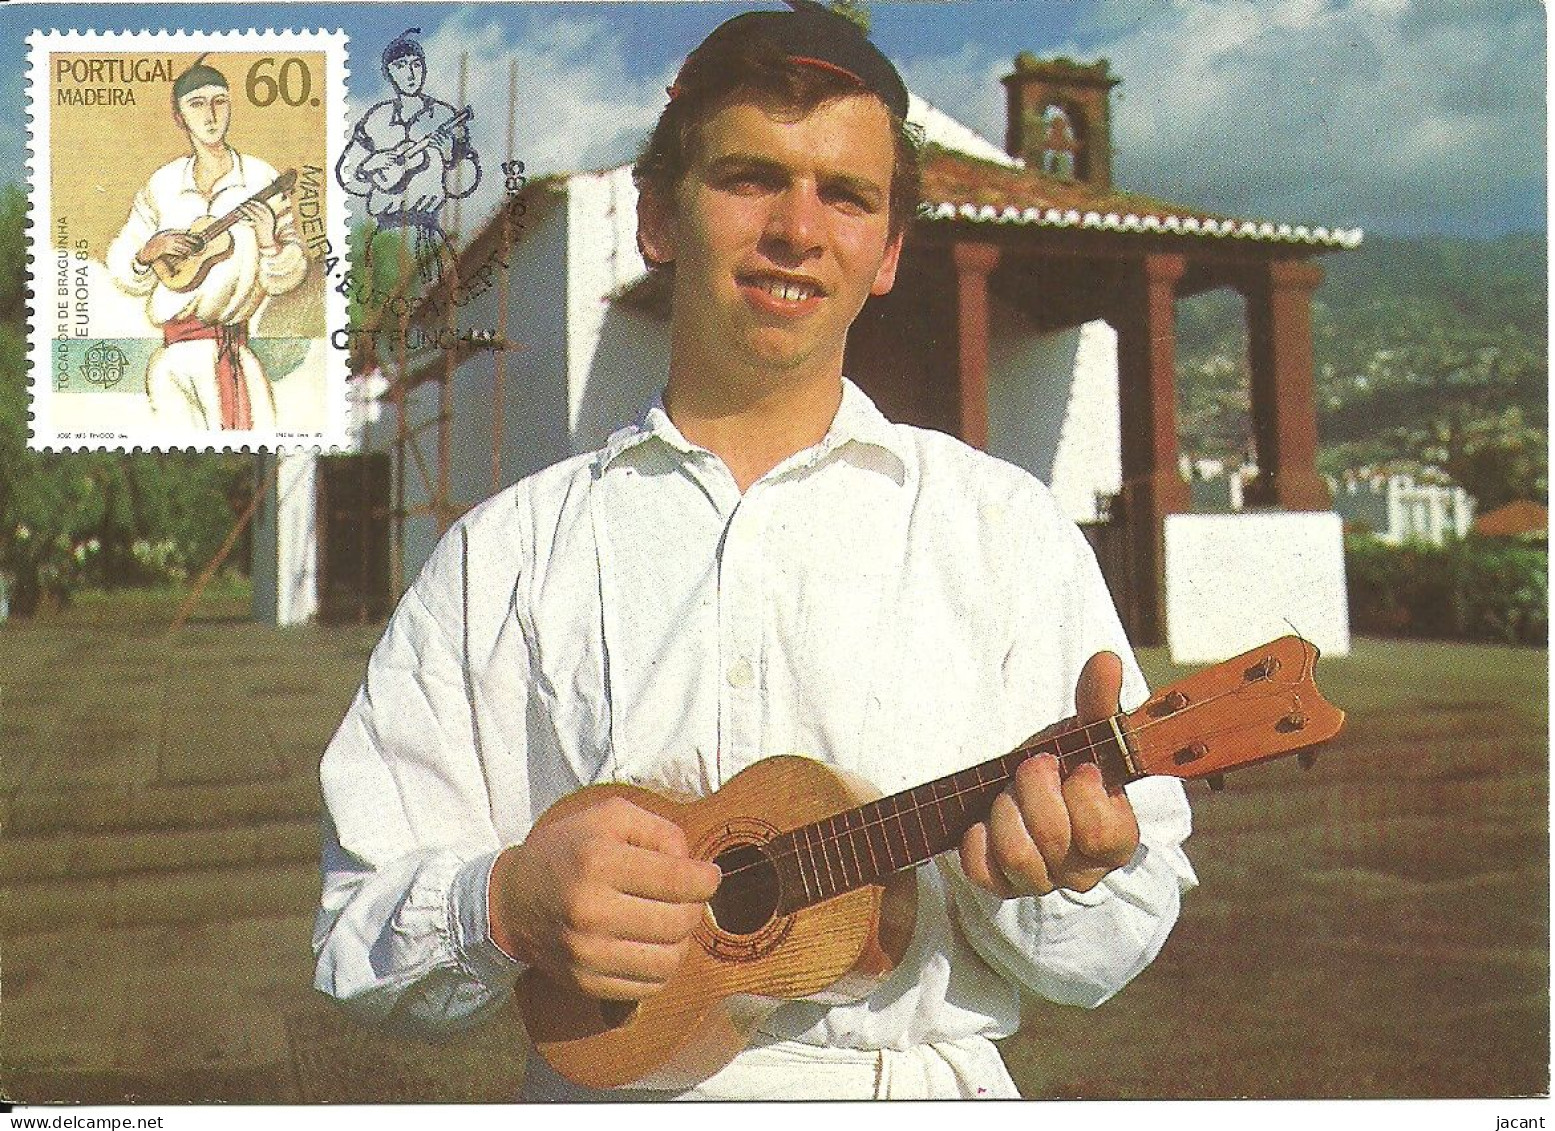 30842 - Carte Maximum - Portugal - Madeira Europa Tocadora De Braguinha - Instrument Musique Guitare Folk Musical Guitar - Cartoline Maximum